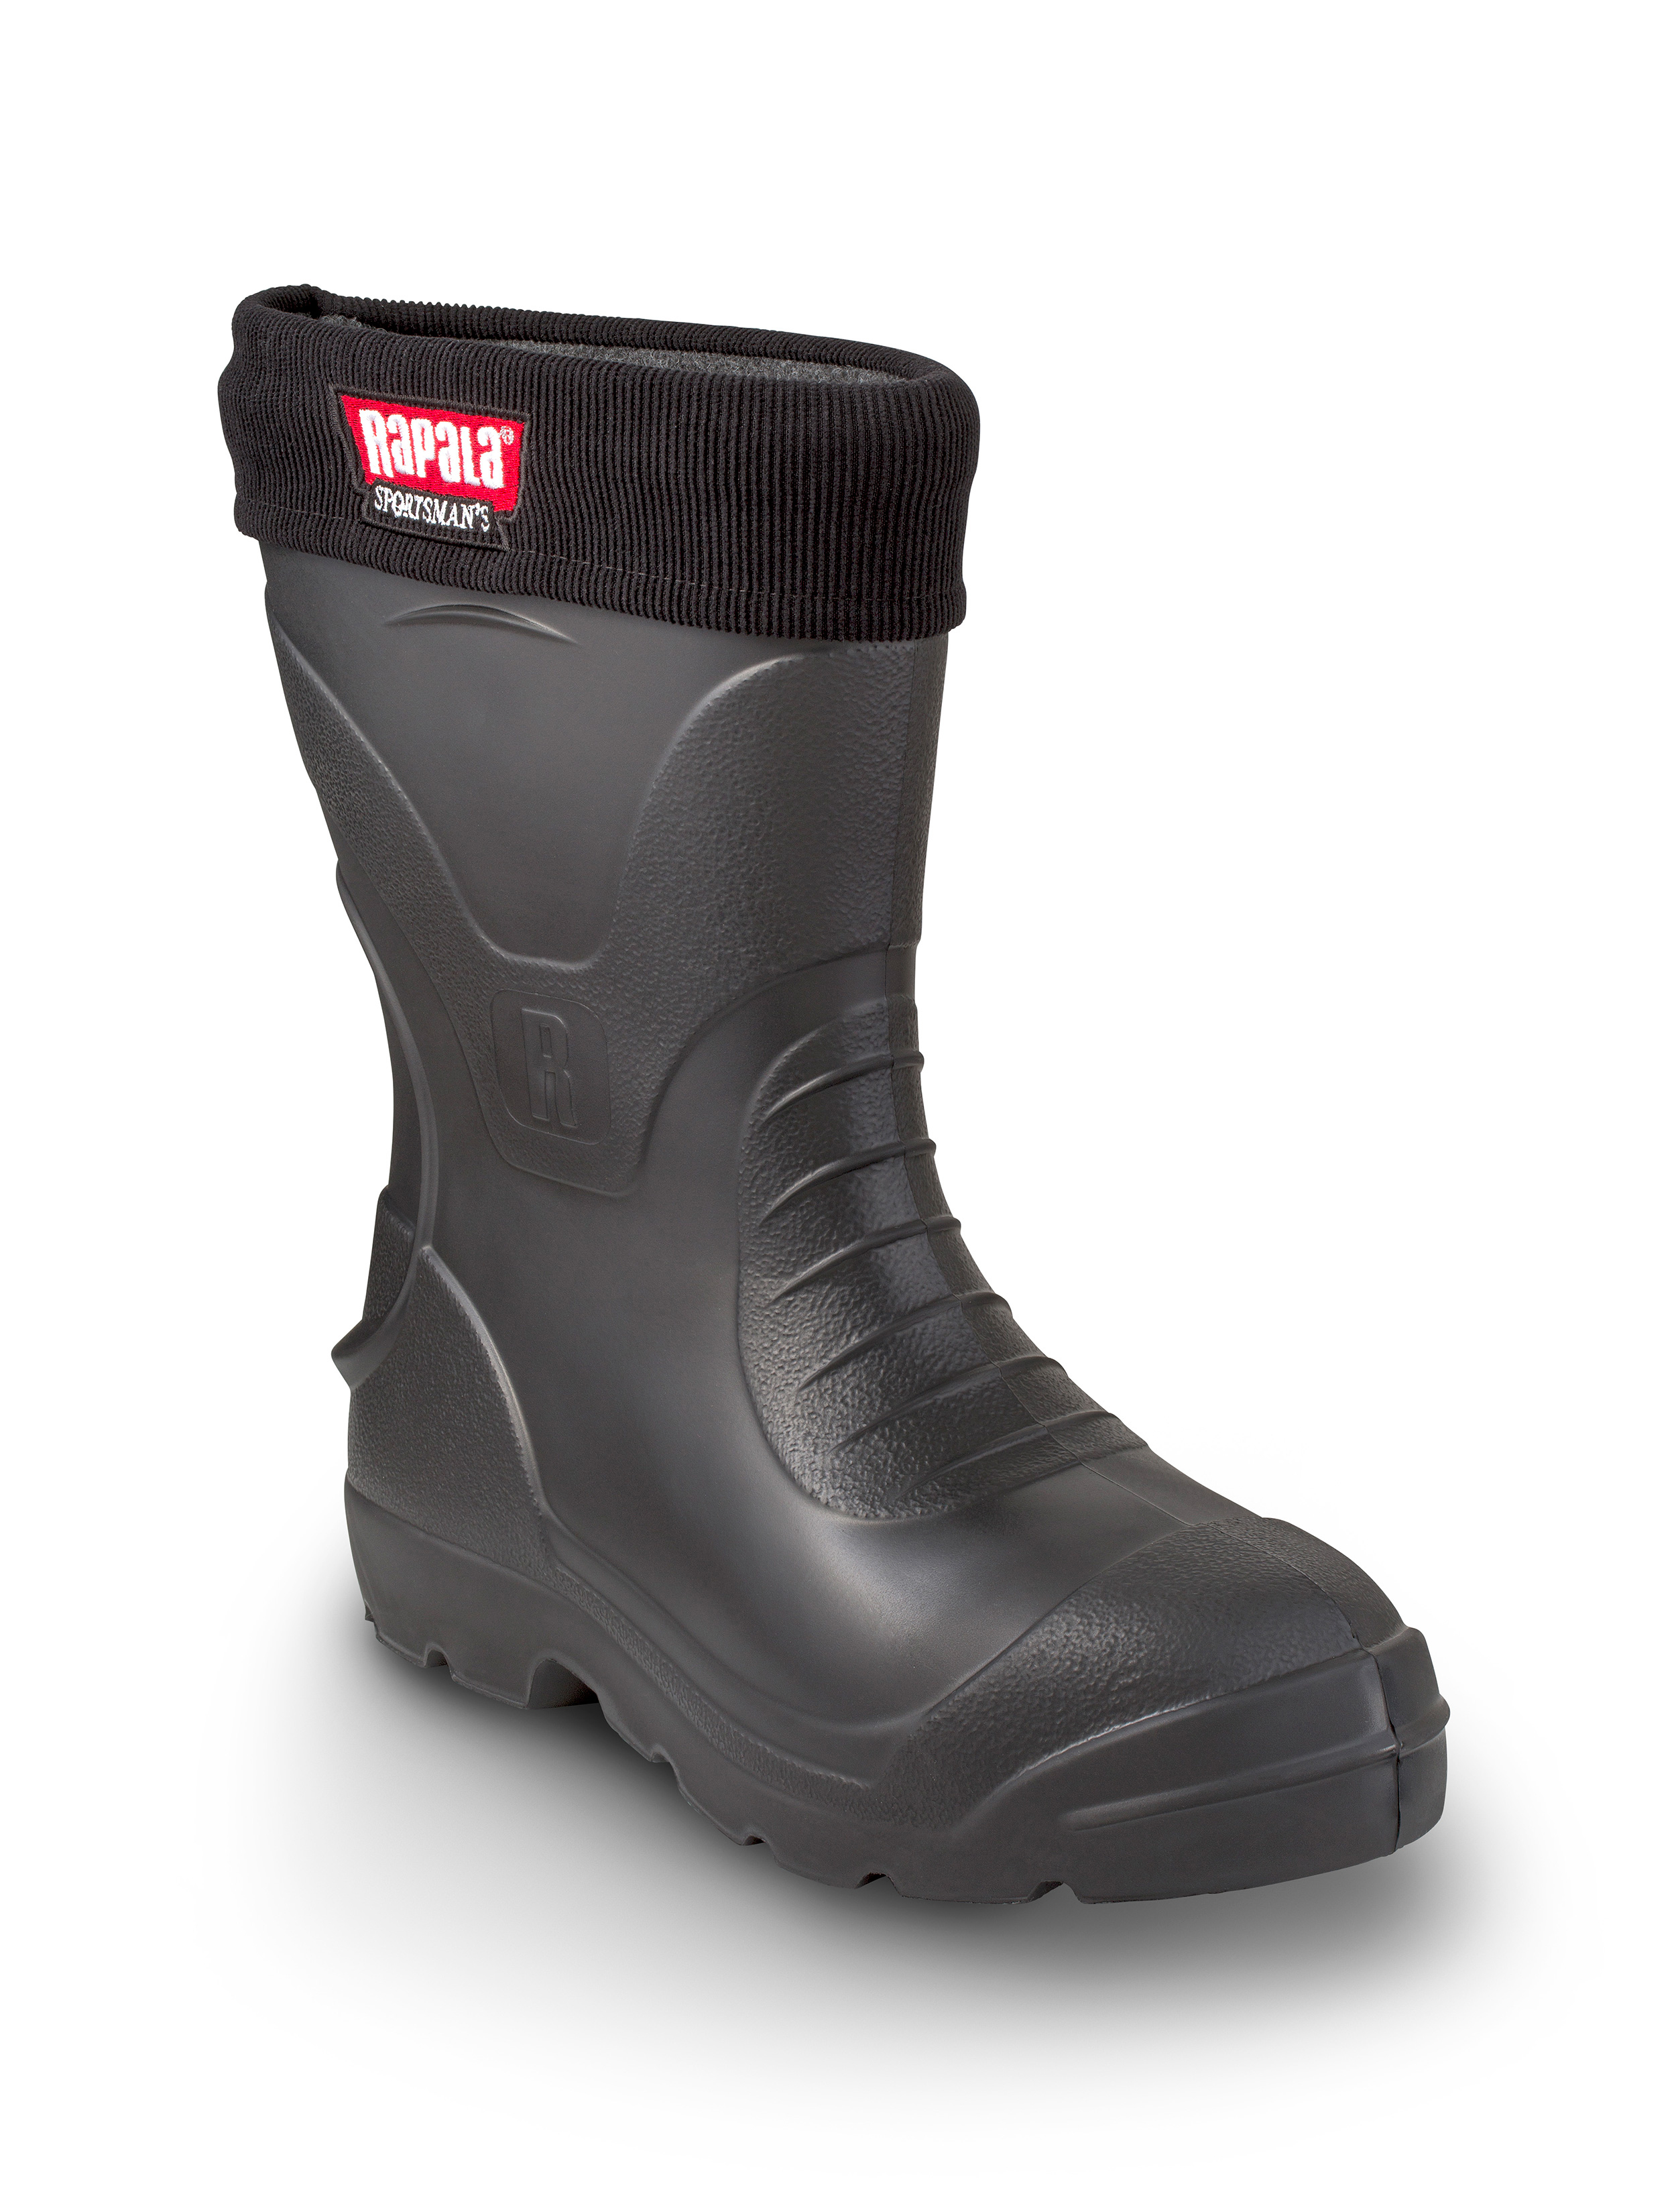 stemning husmor facet Rapala Sportsman´s Medium Short -30C Winter Boots | Happy Angler